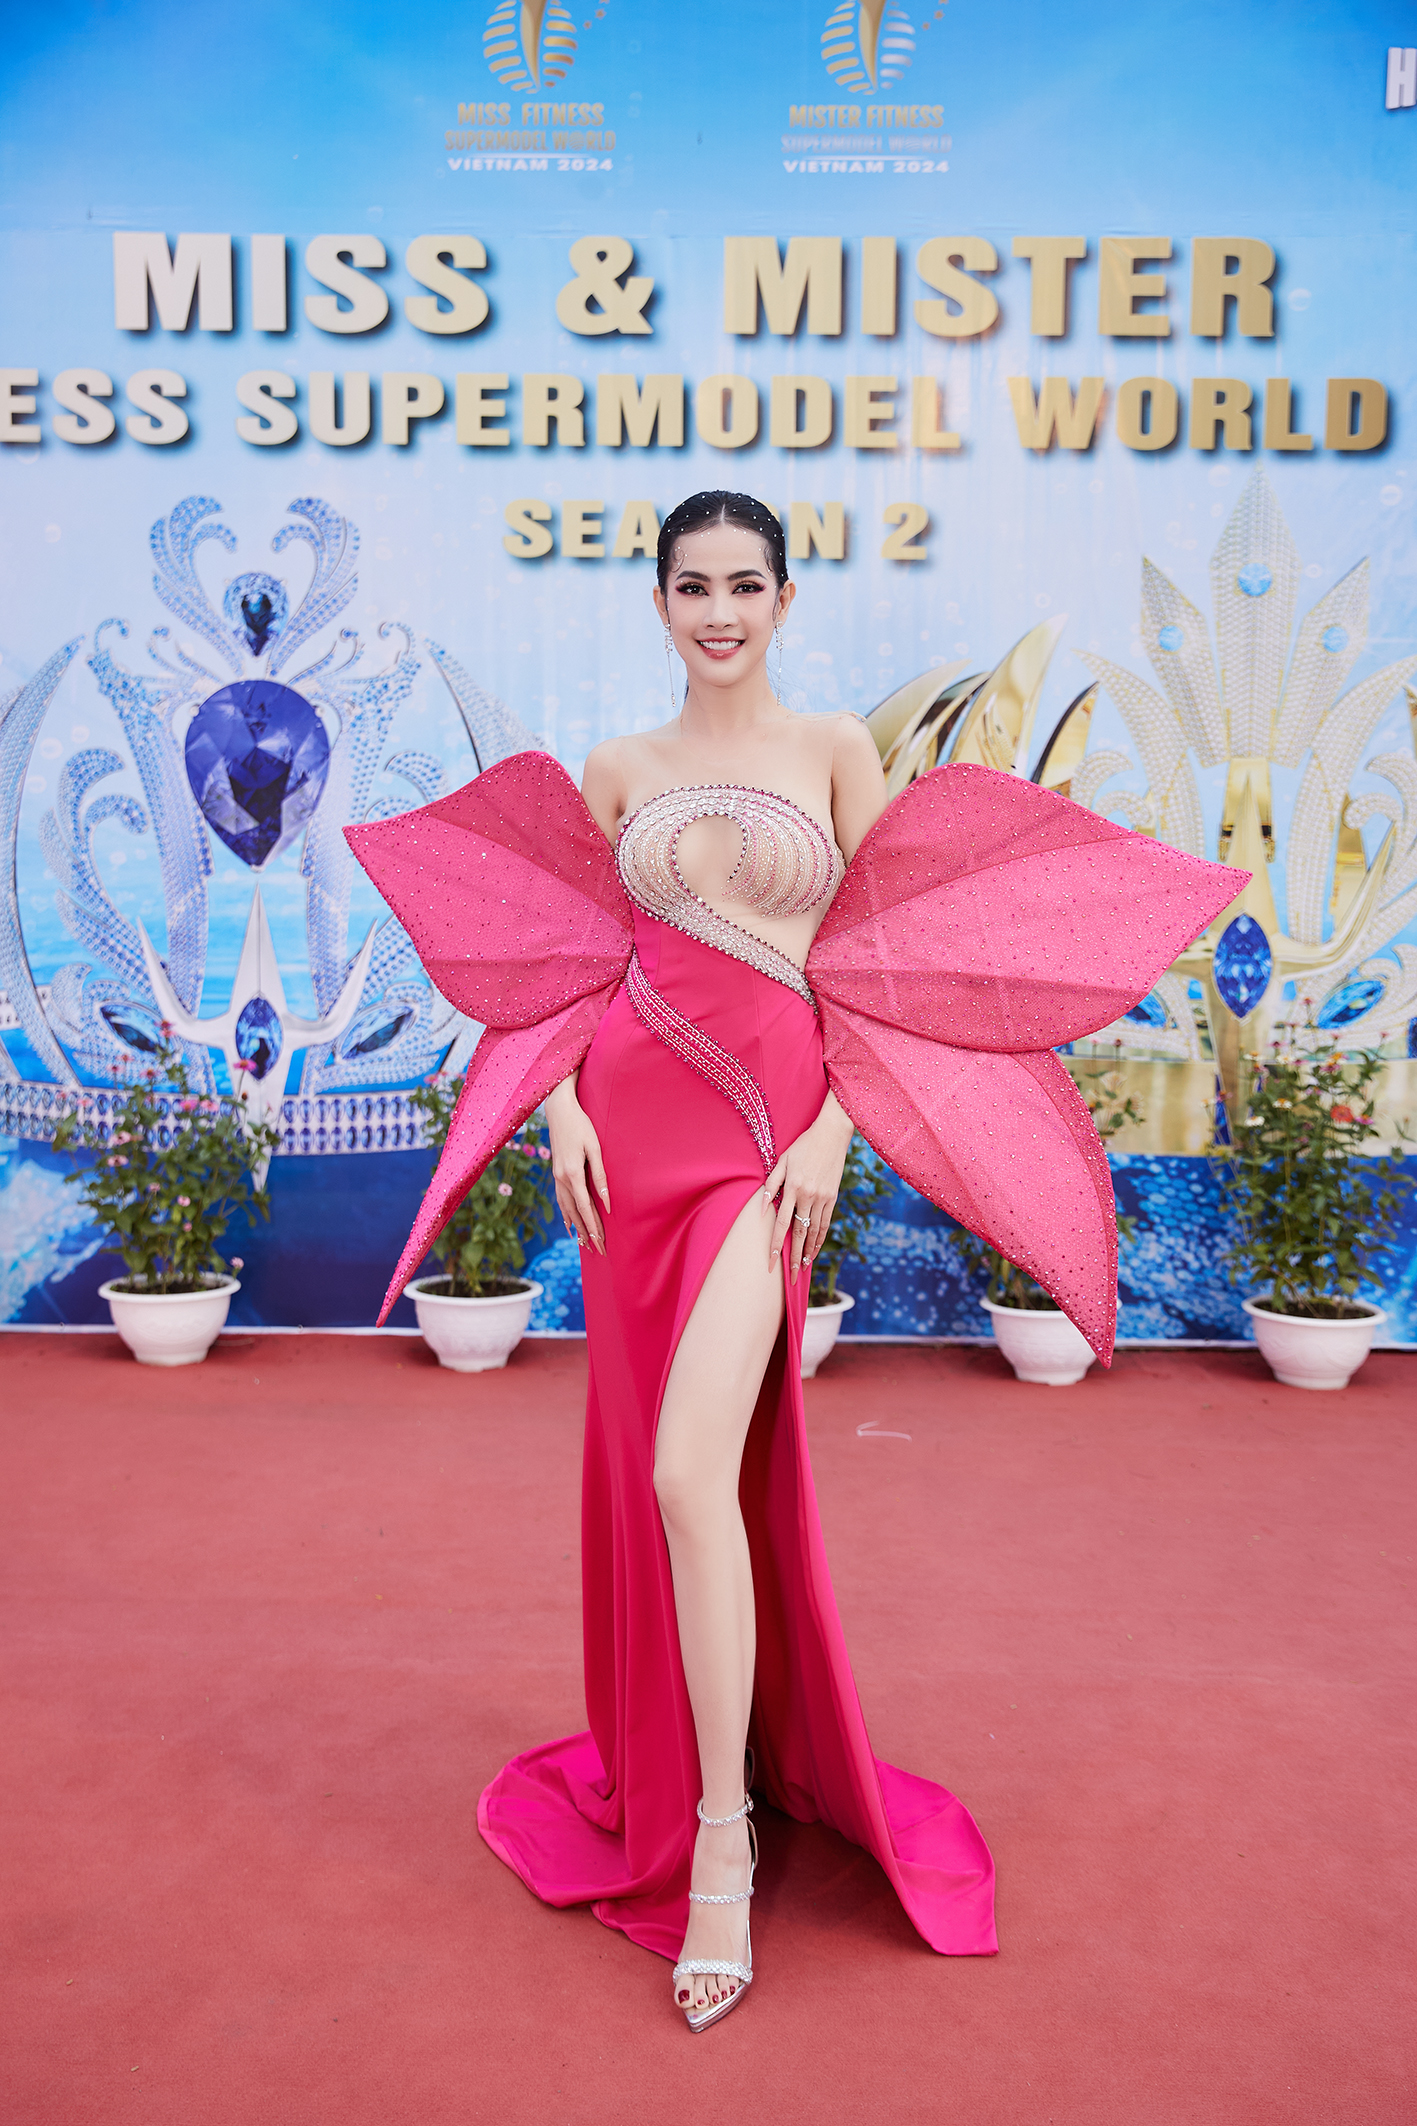 Tối 18.5, Hoa hậu Phan Thị Mơ xuất hiện tại đêm chung kết cuộc thi Miss & Mister Fitness Supermodel World 2024. Sự kiện này diễn ra tại thành phố Vũng Tàu và được cấp phép theo công văn số 3060/UBND-TP của Ủy ban nhân dân tỉnh Bà Rịa - Vũng Tàu ngày 14.3.2024